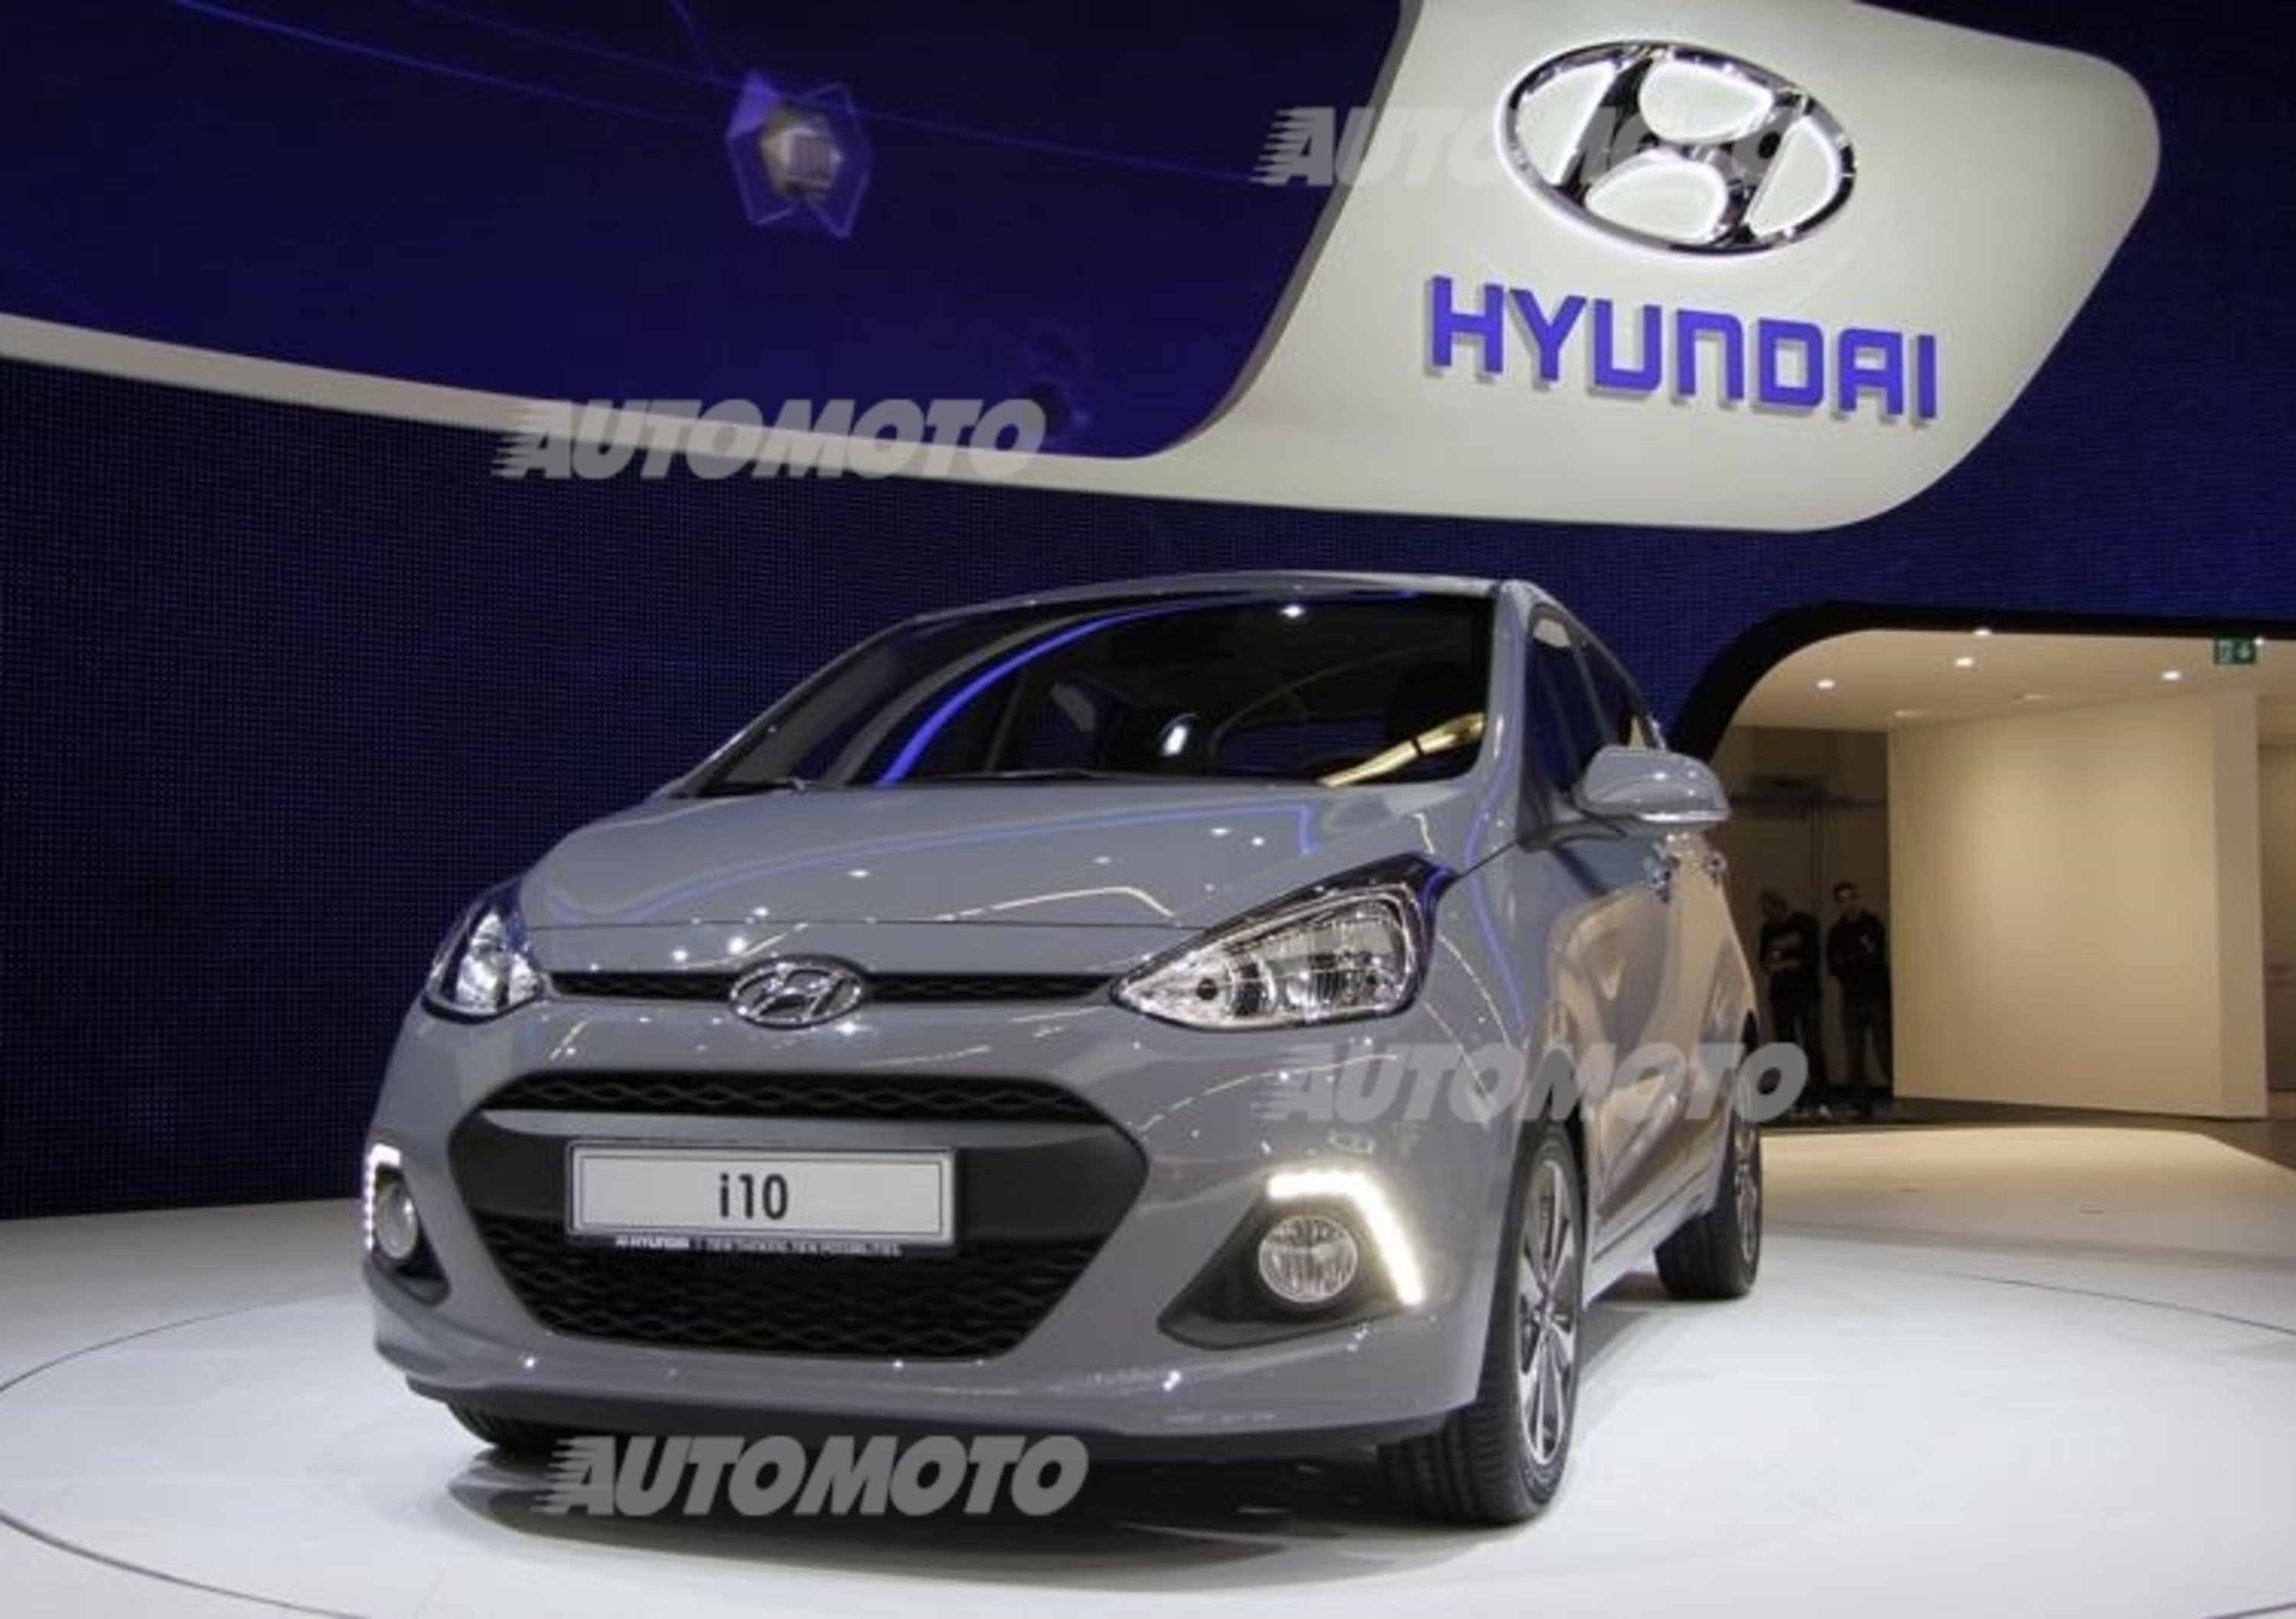 Hyundai al Salone di Francoforte 2013